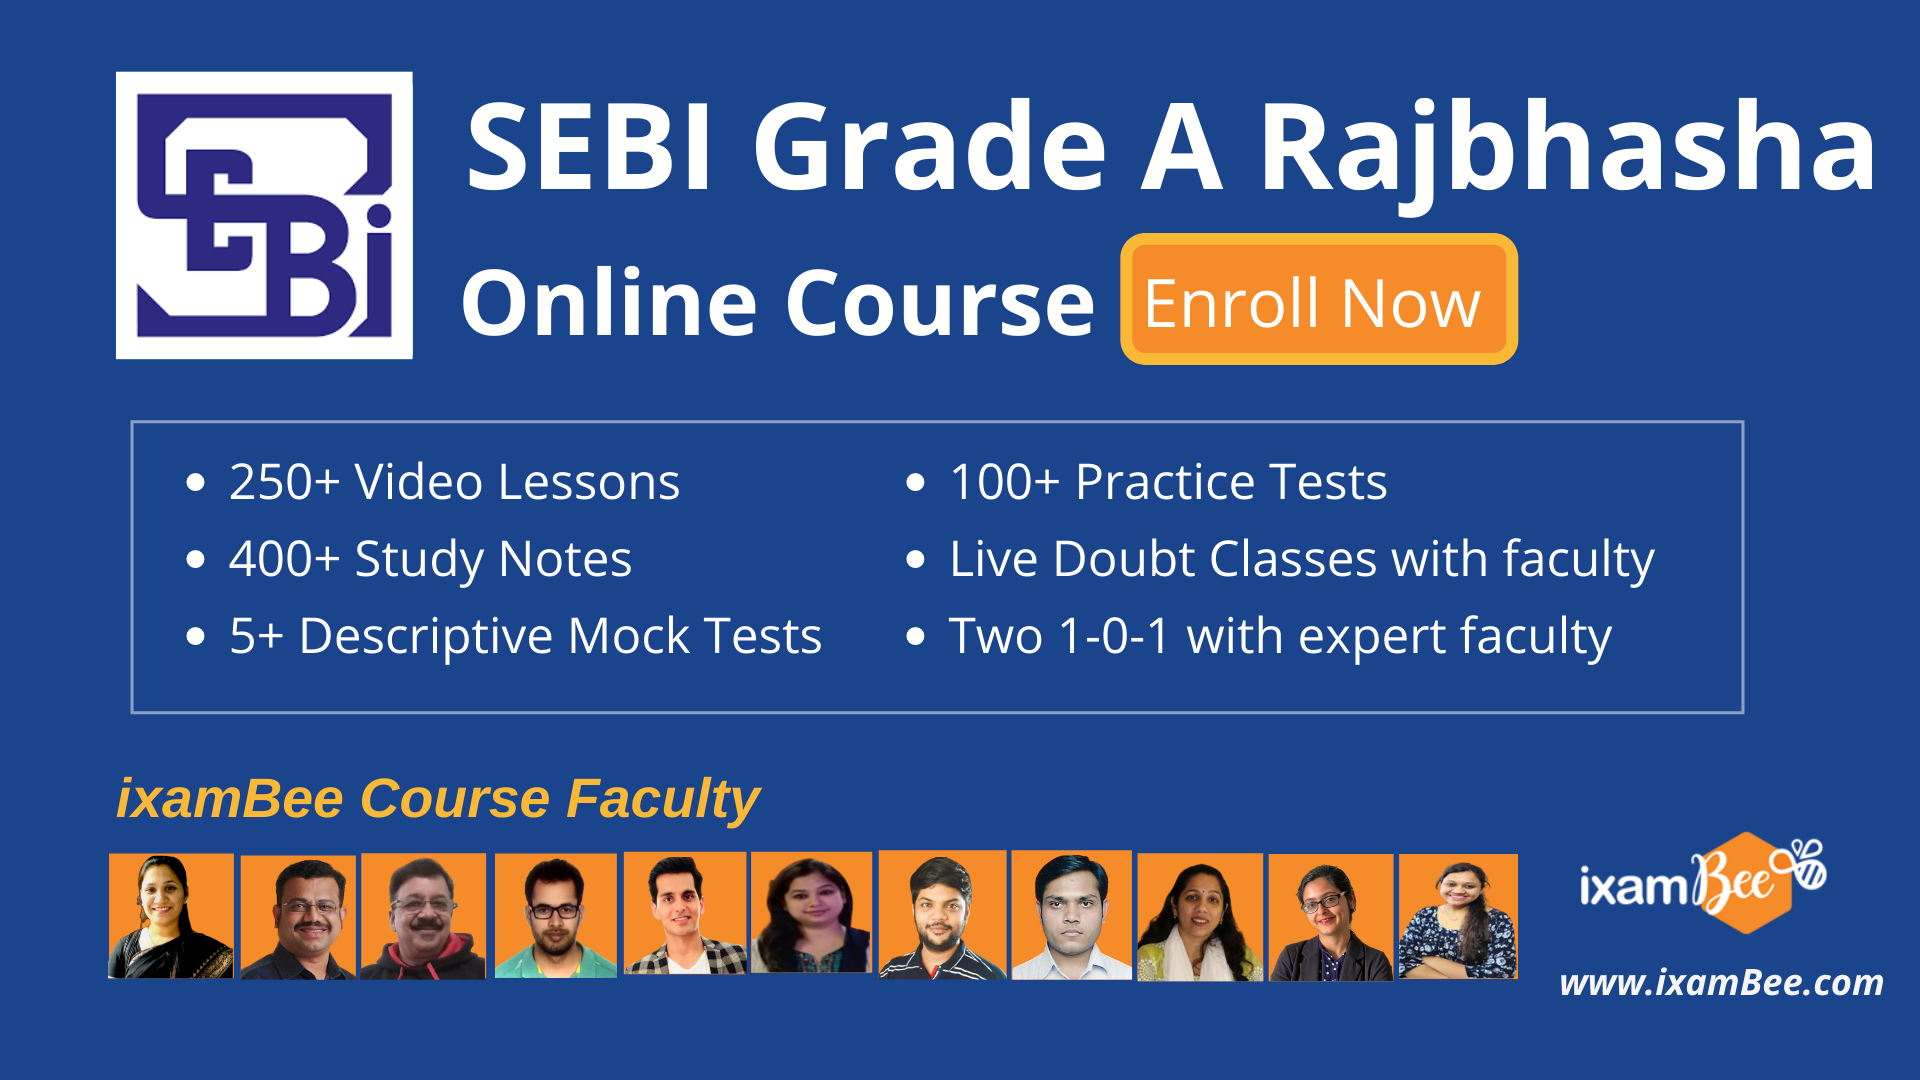 SEBI Grade A Rajbhasha Online Course